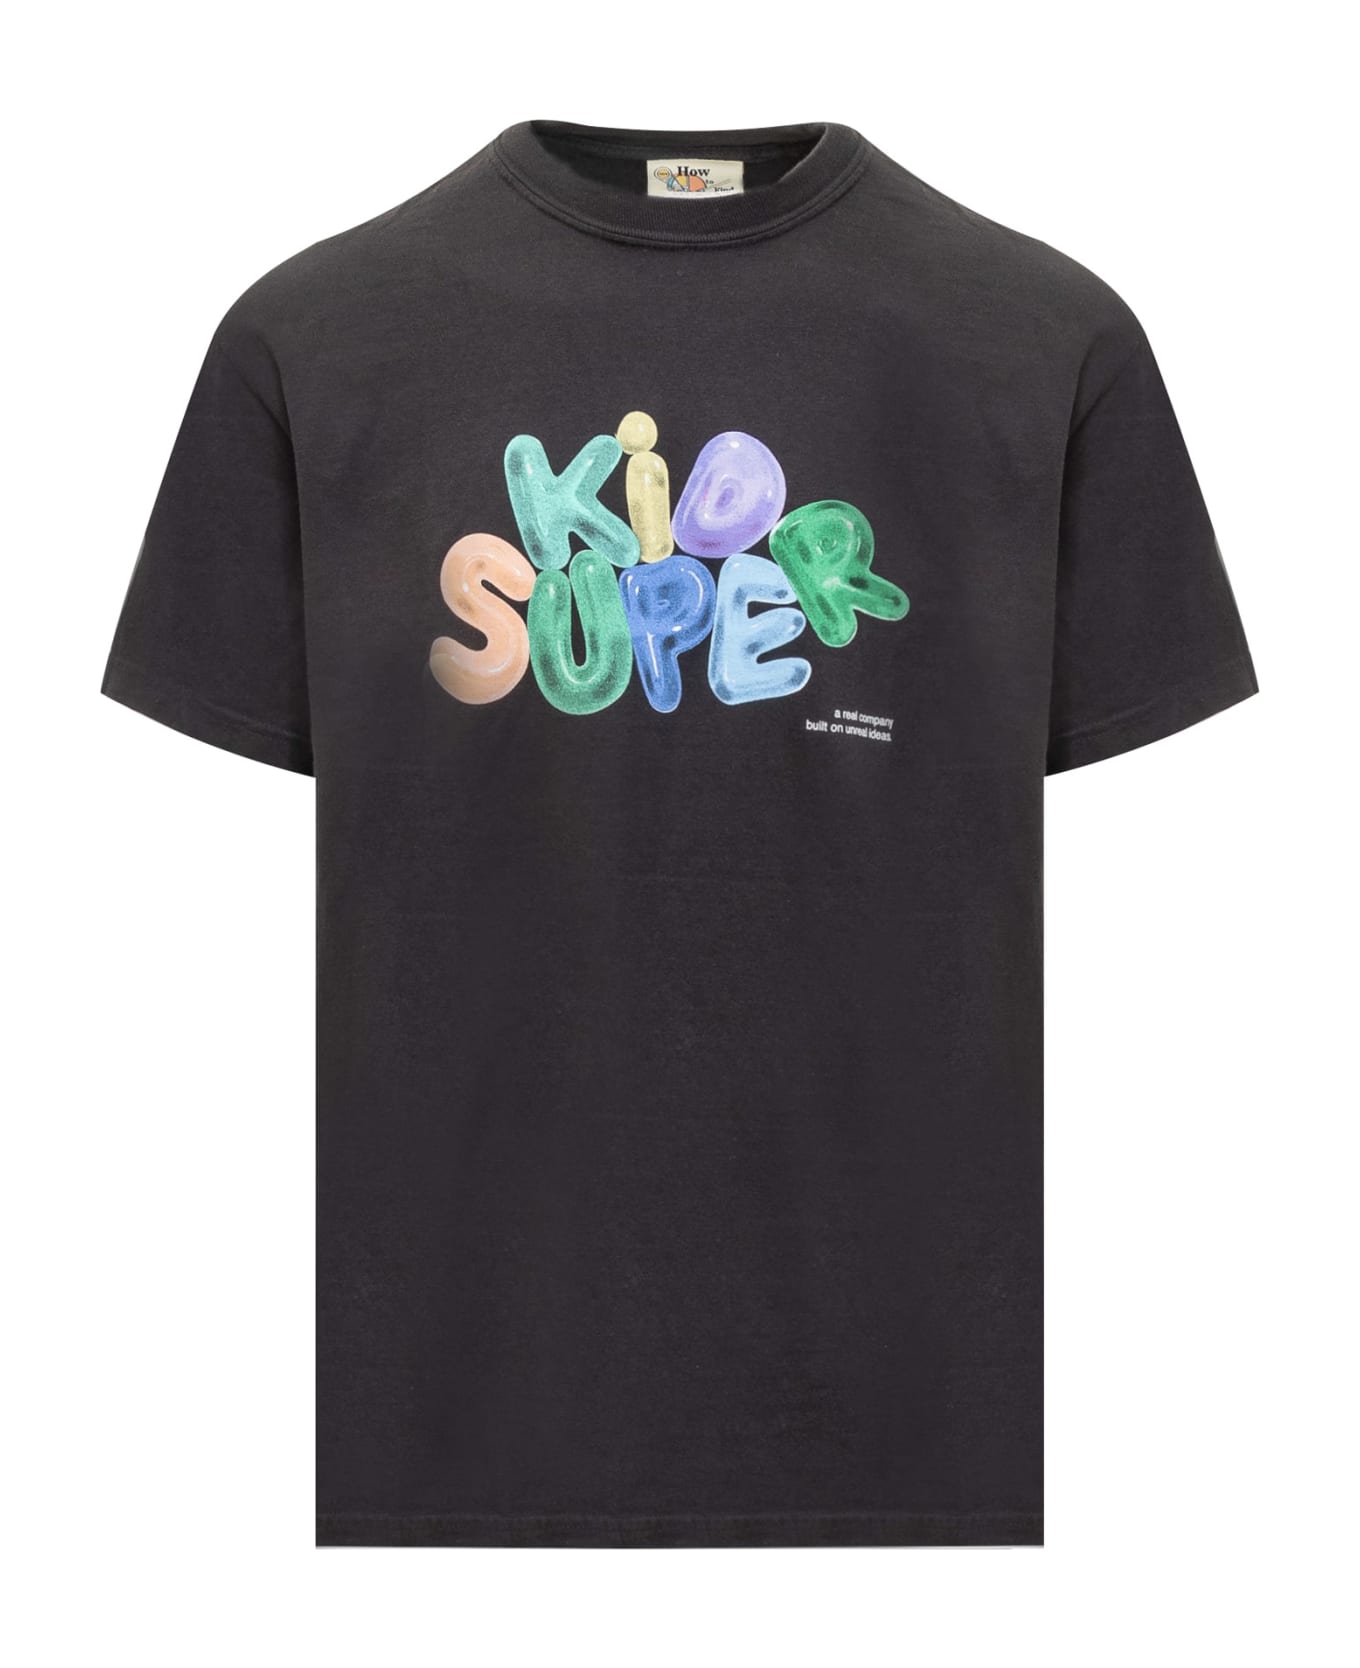 Kidsuper Bubble T-shirt - BLACK